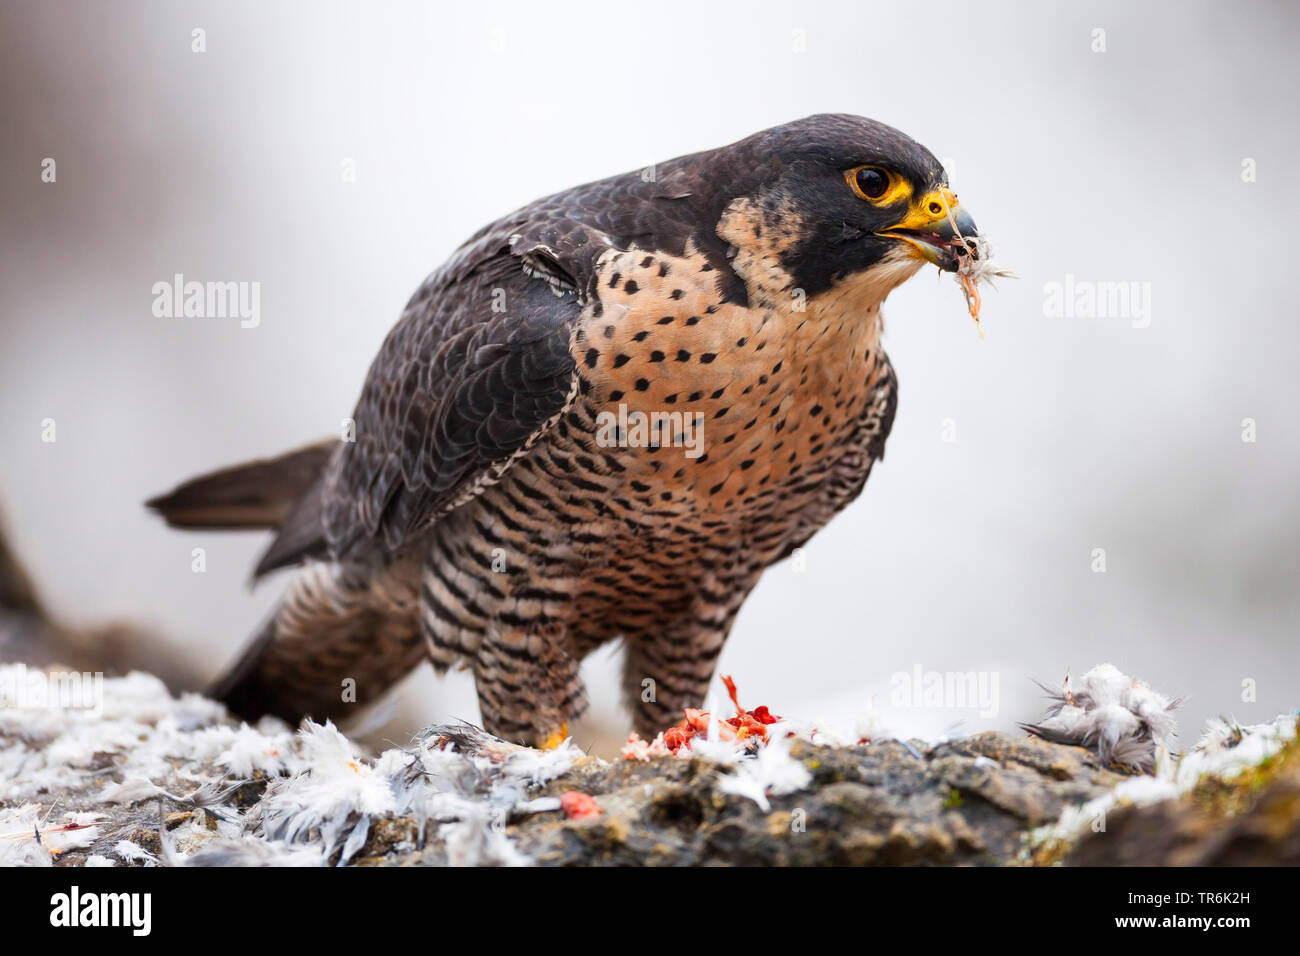 El halcón peregrino (Falco peregrinus), sentados en el suelo alimentando, Alemania Foto de stock